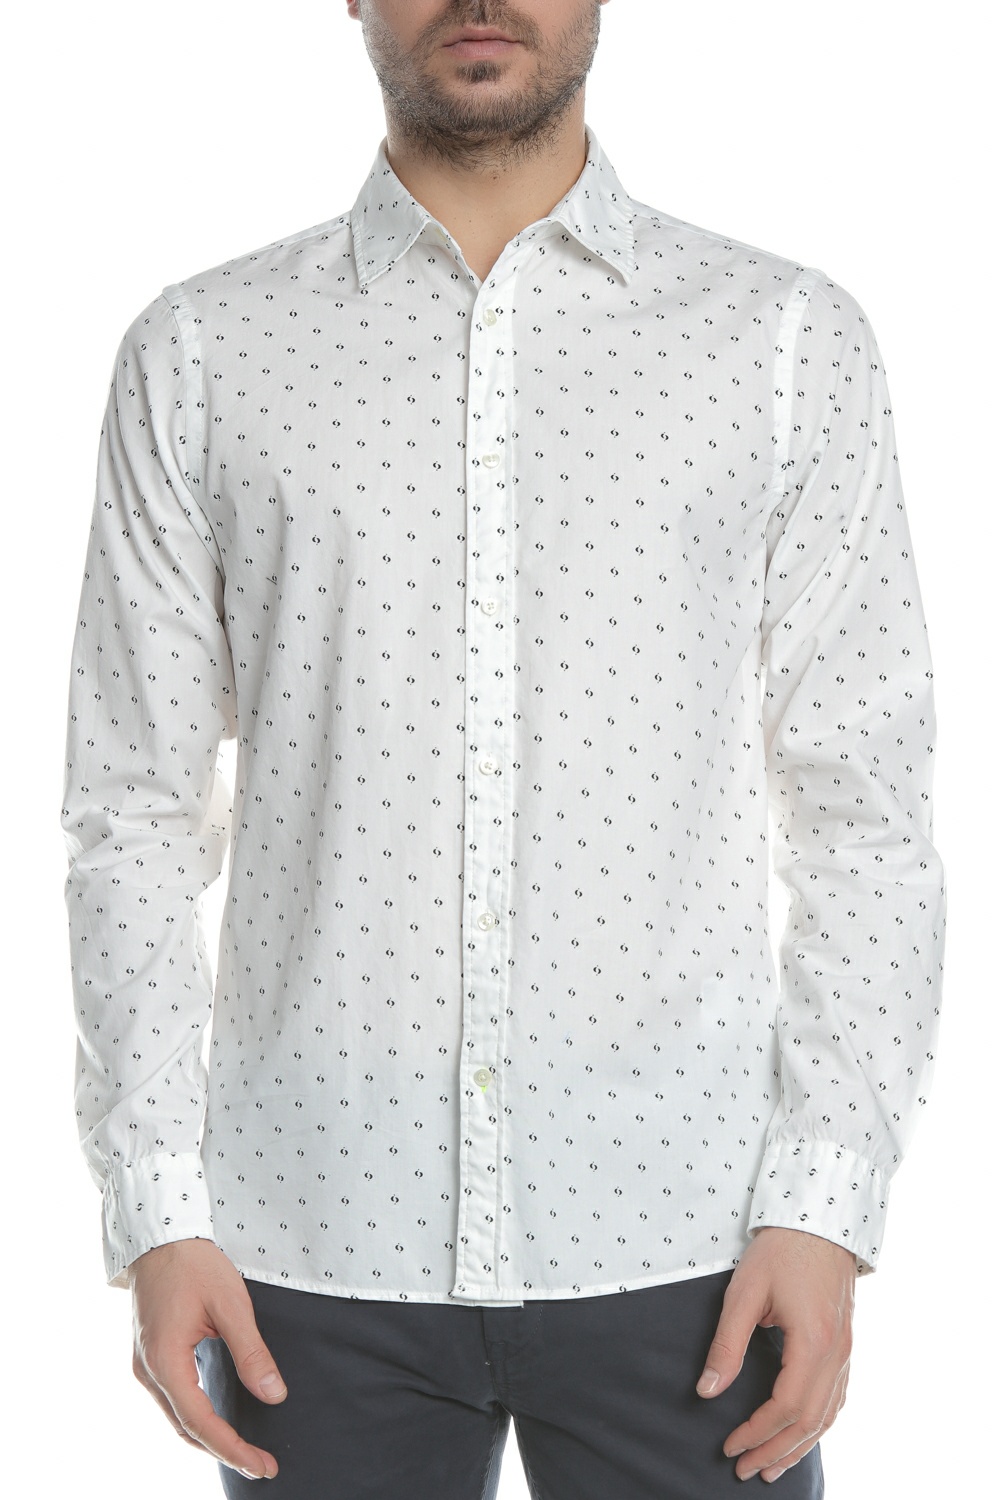 Ανδρικά/Ρούχα/Πουκάμισα/Μακρυμάνικα SCOTCH & SODA - Ανδρικό πουκάμισο SCOTCH & SODA λευκό μπλέ